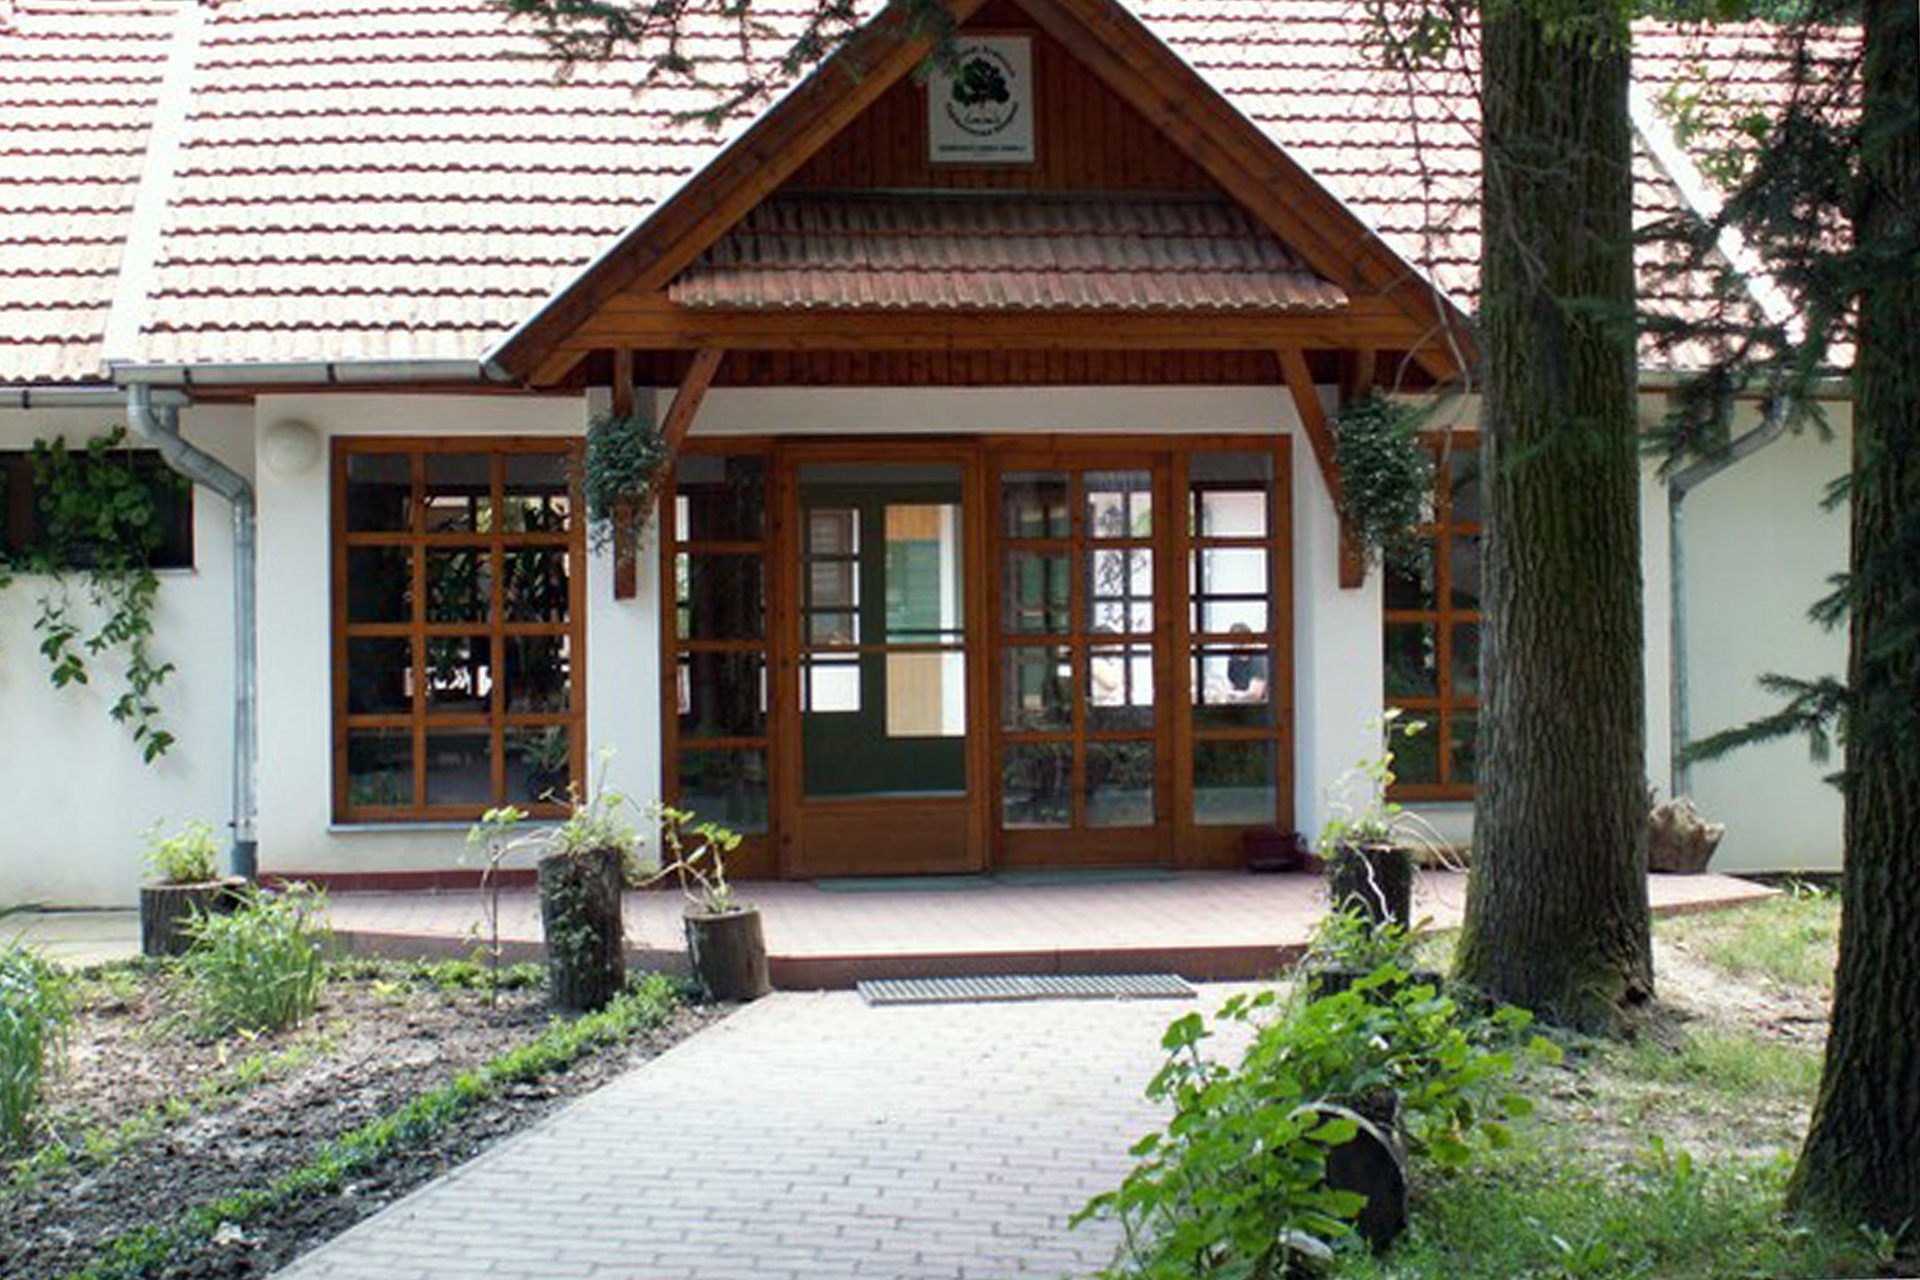 Erdészettörténeti múzeumot hozna létre a Dalerd Zrt.